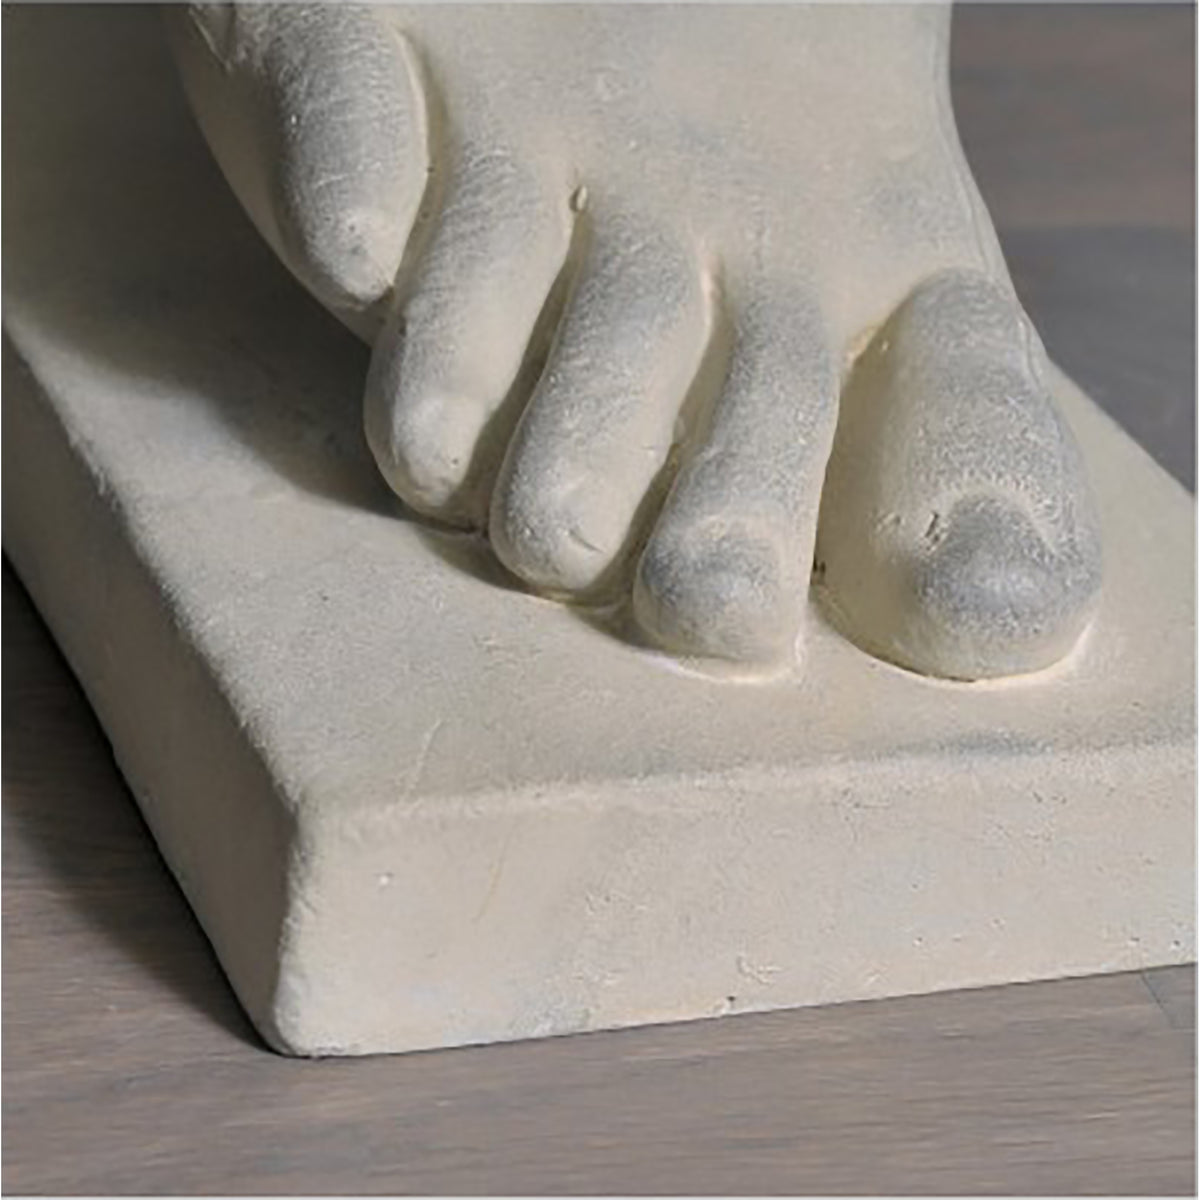 Winged Foot of Hermes Sculpture